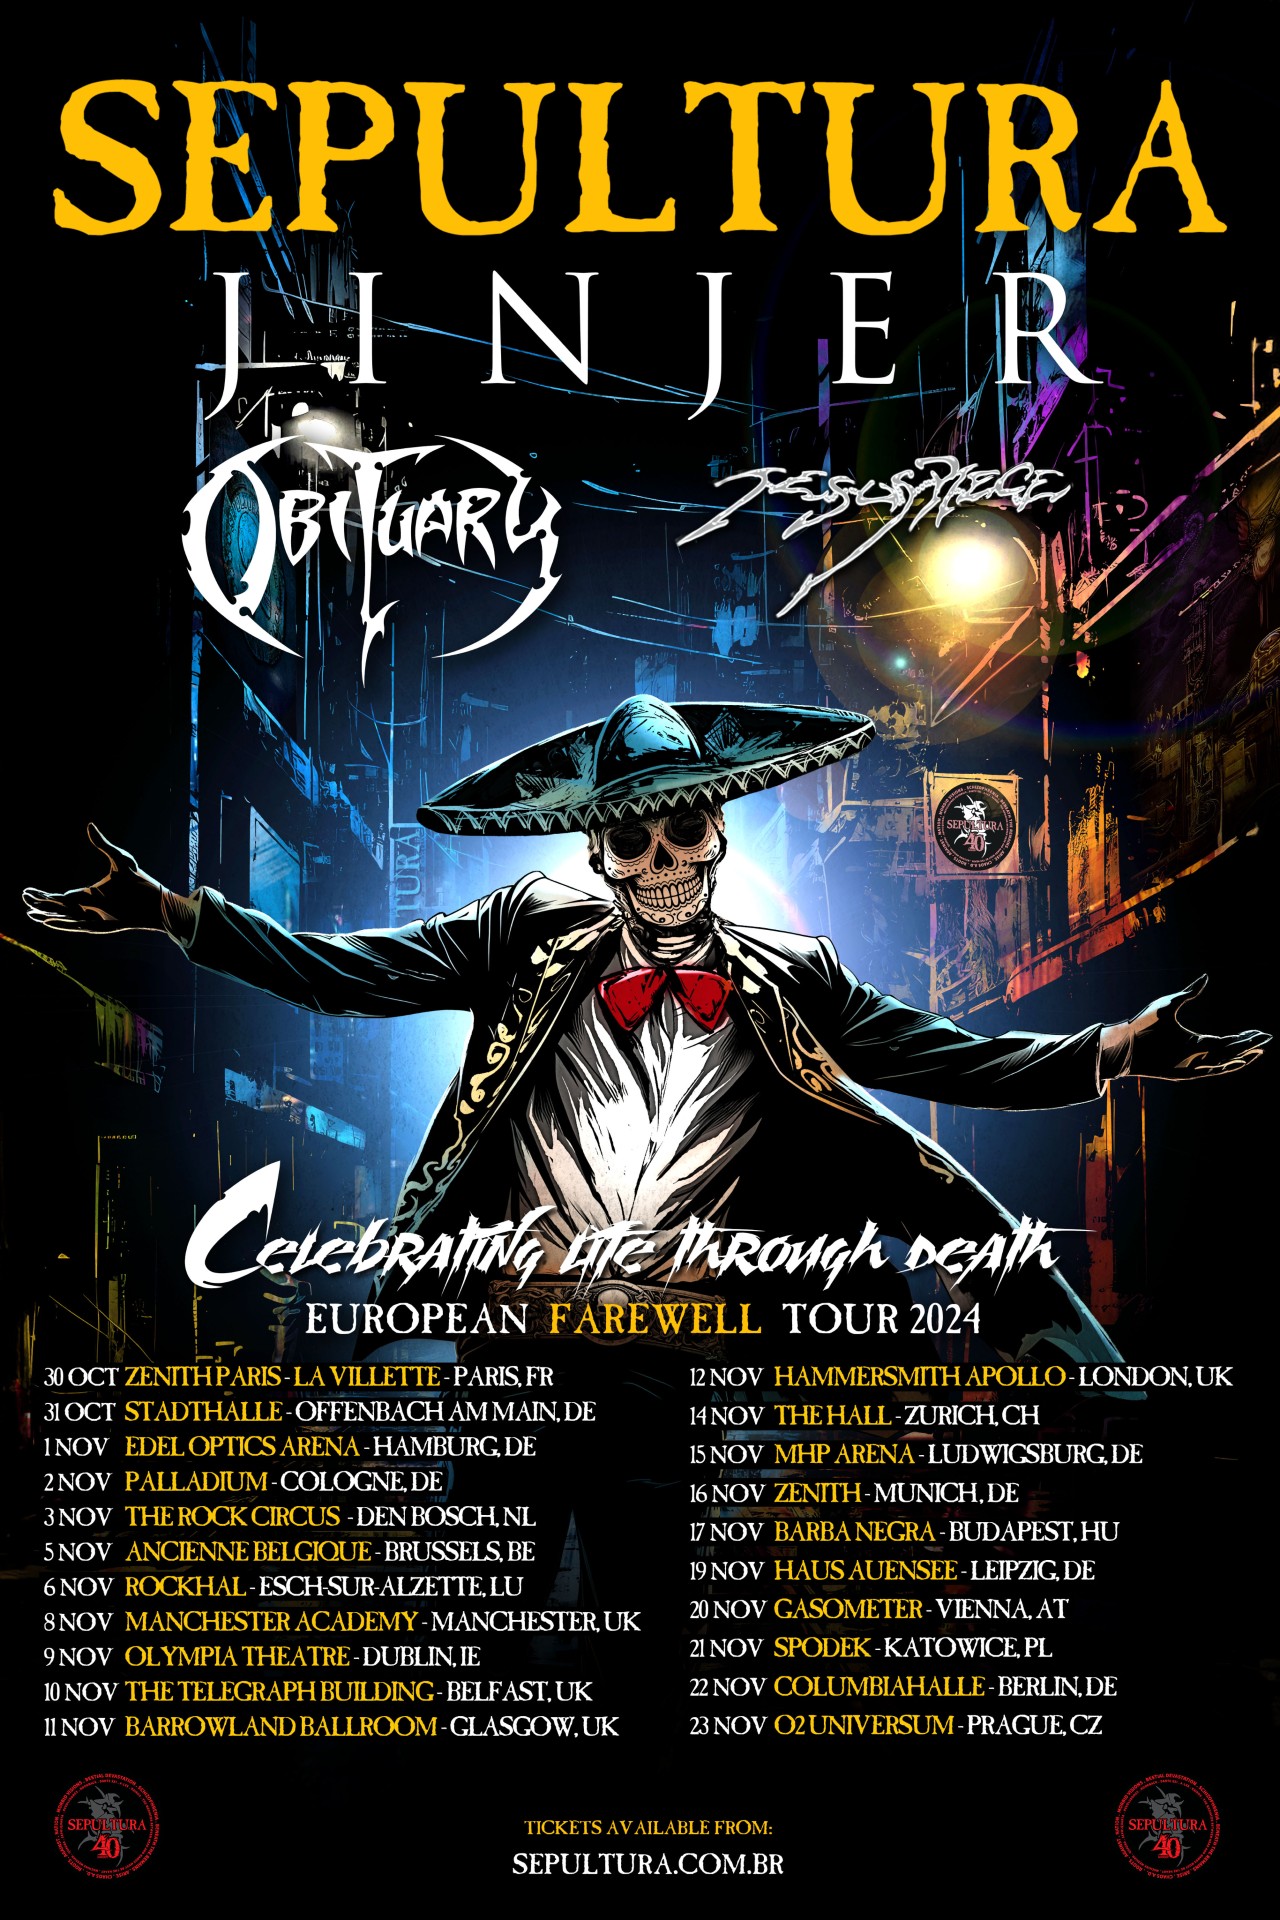 Sepultura “Celebrating Life Through Death” EU tour flyer